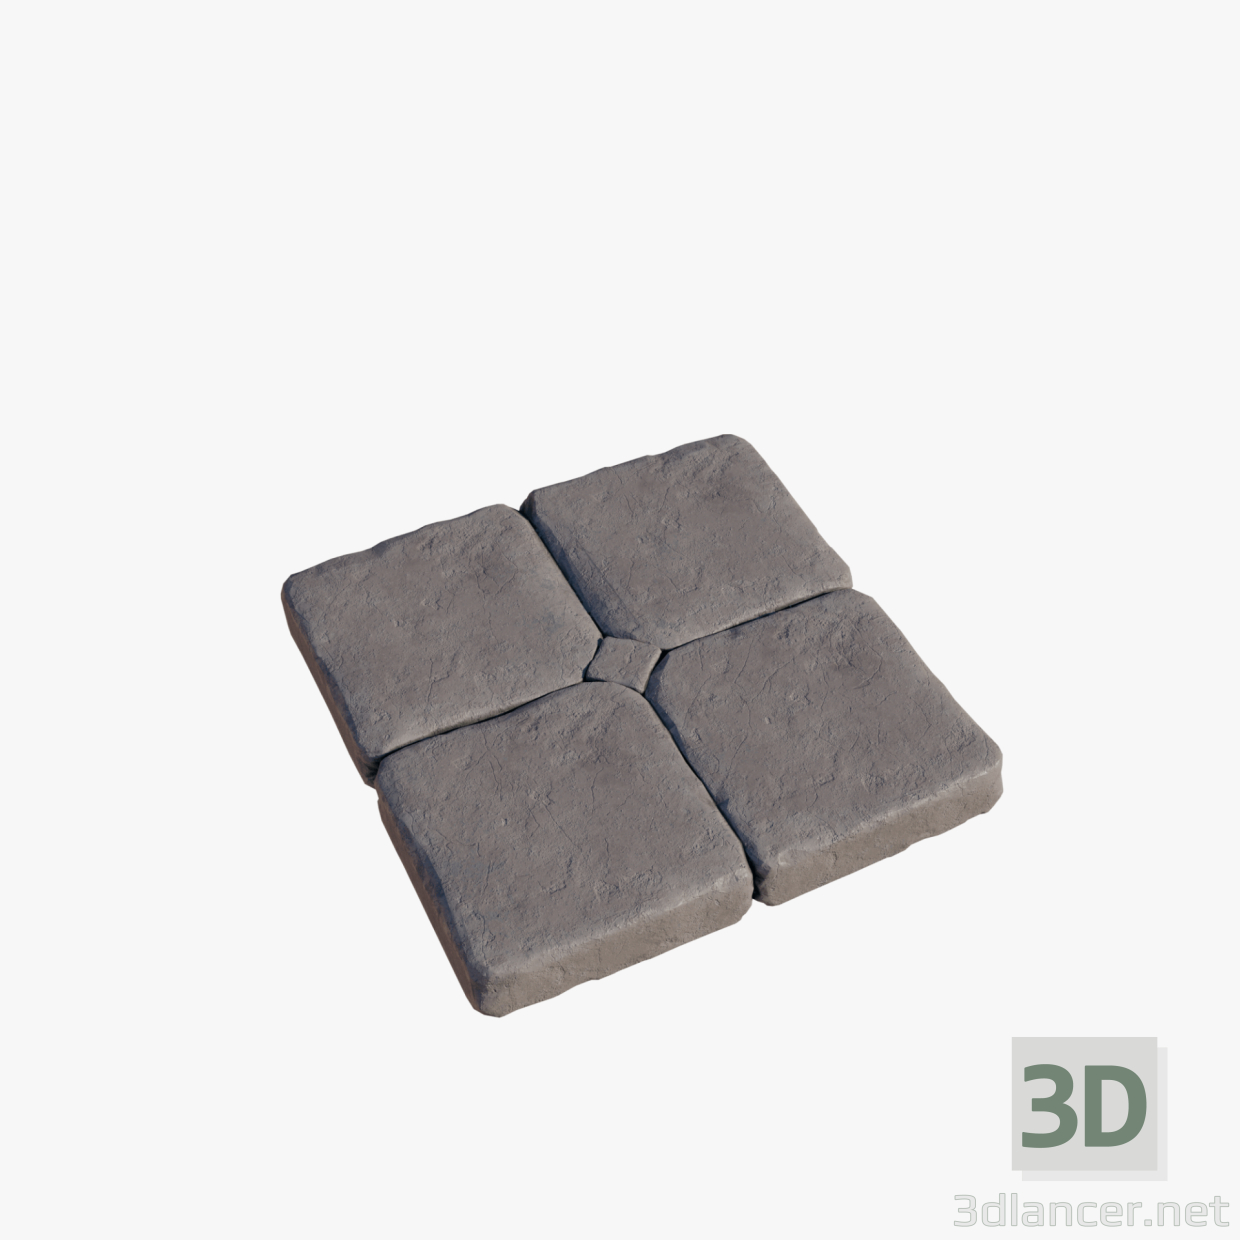 3D Eski kaldırım levhaları modeli satın - render